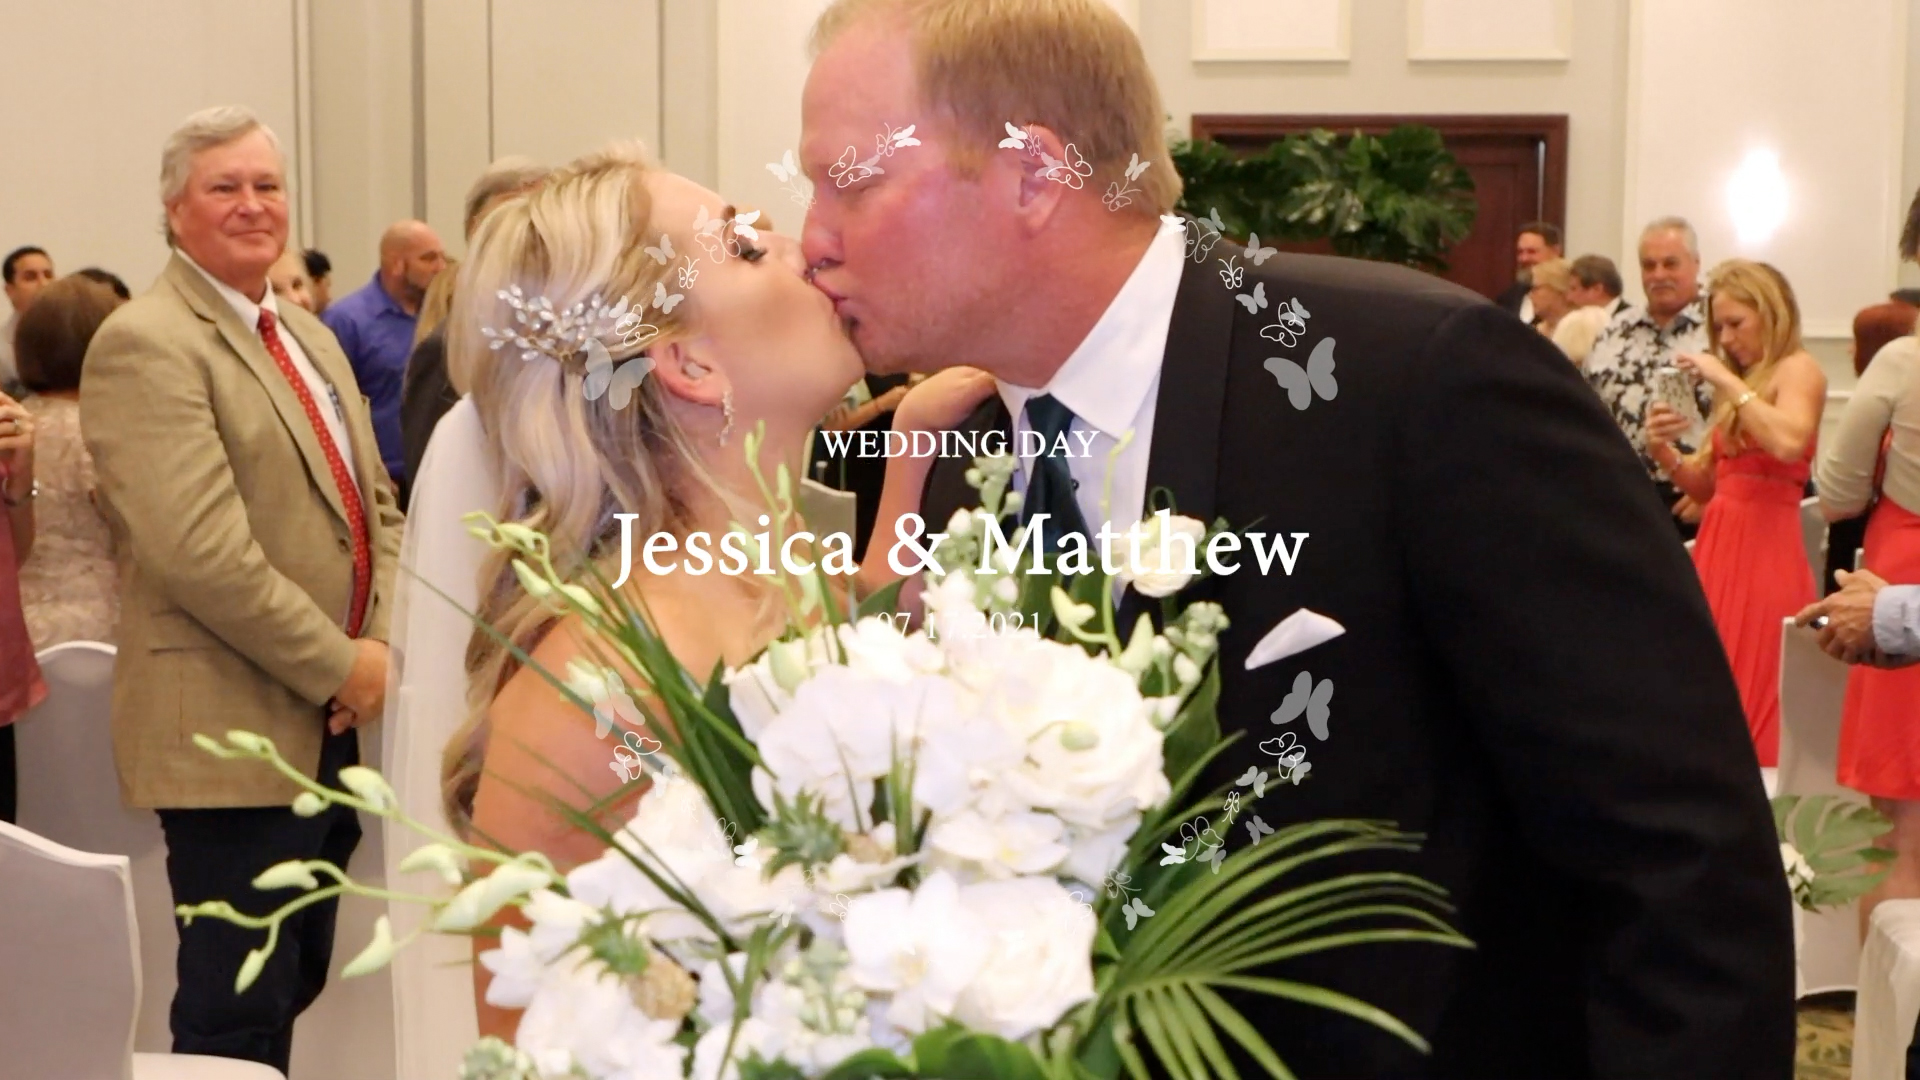 Jessica & Matthew Wedding – Trailer